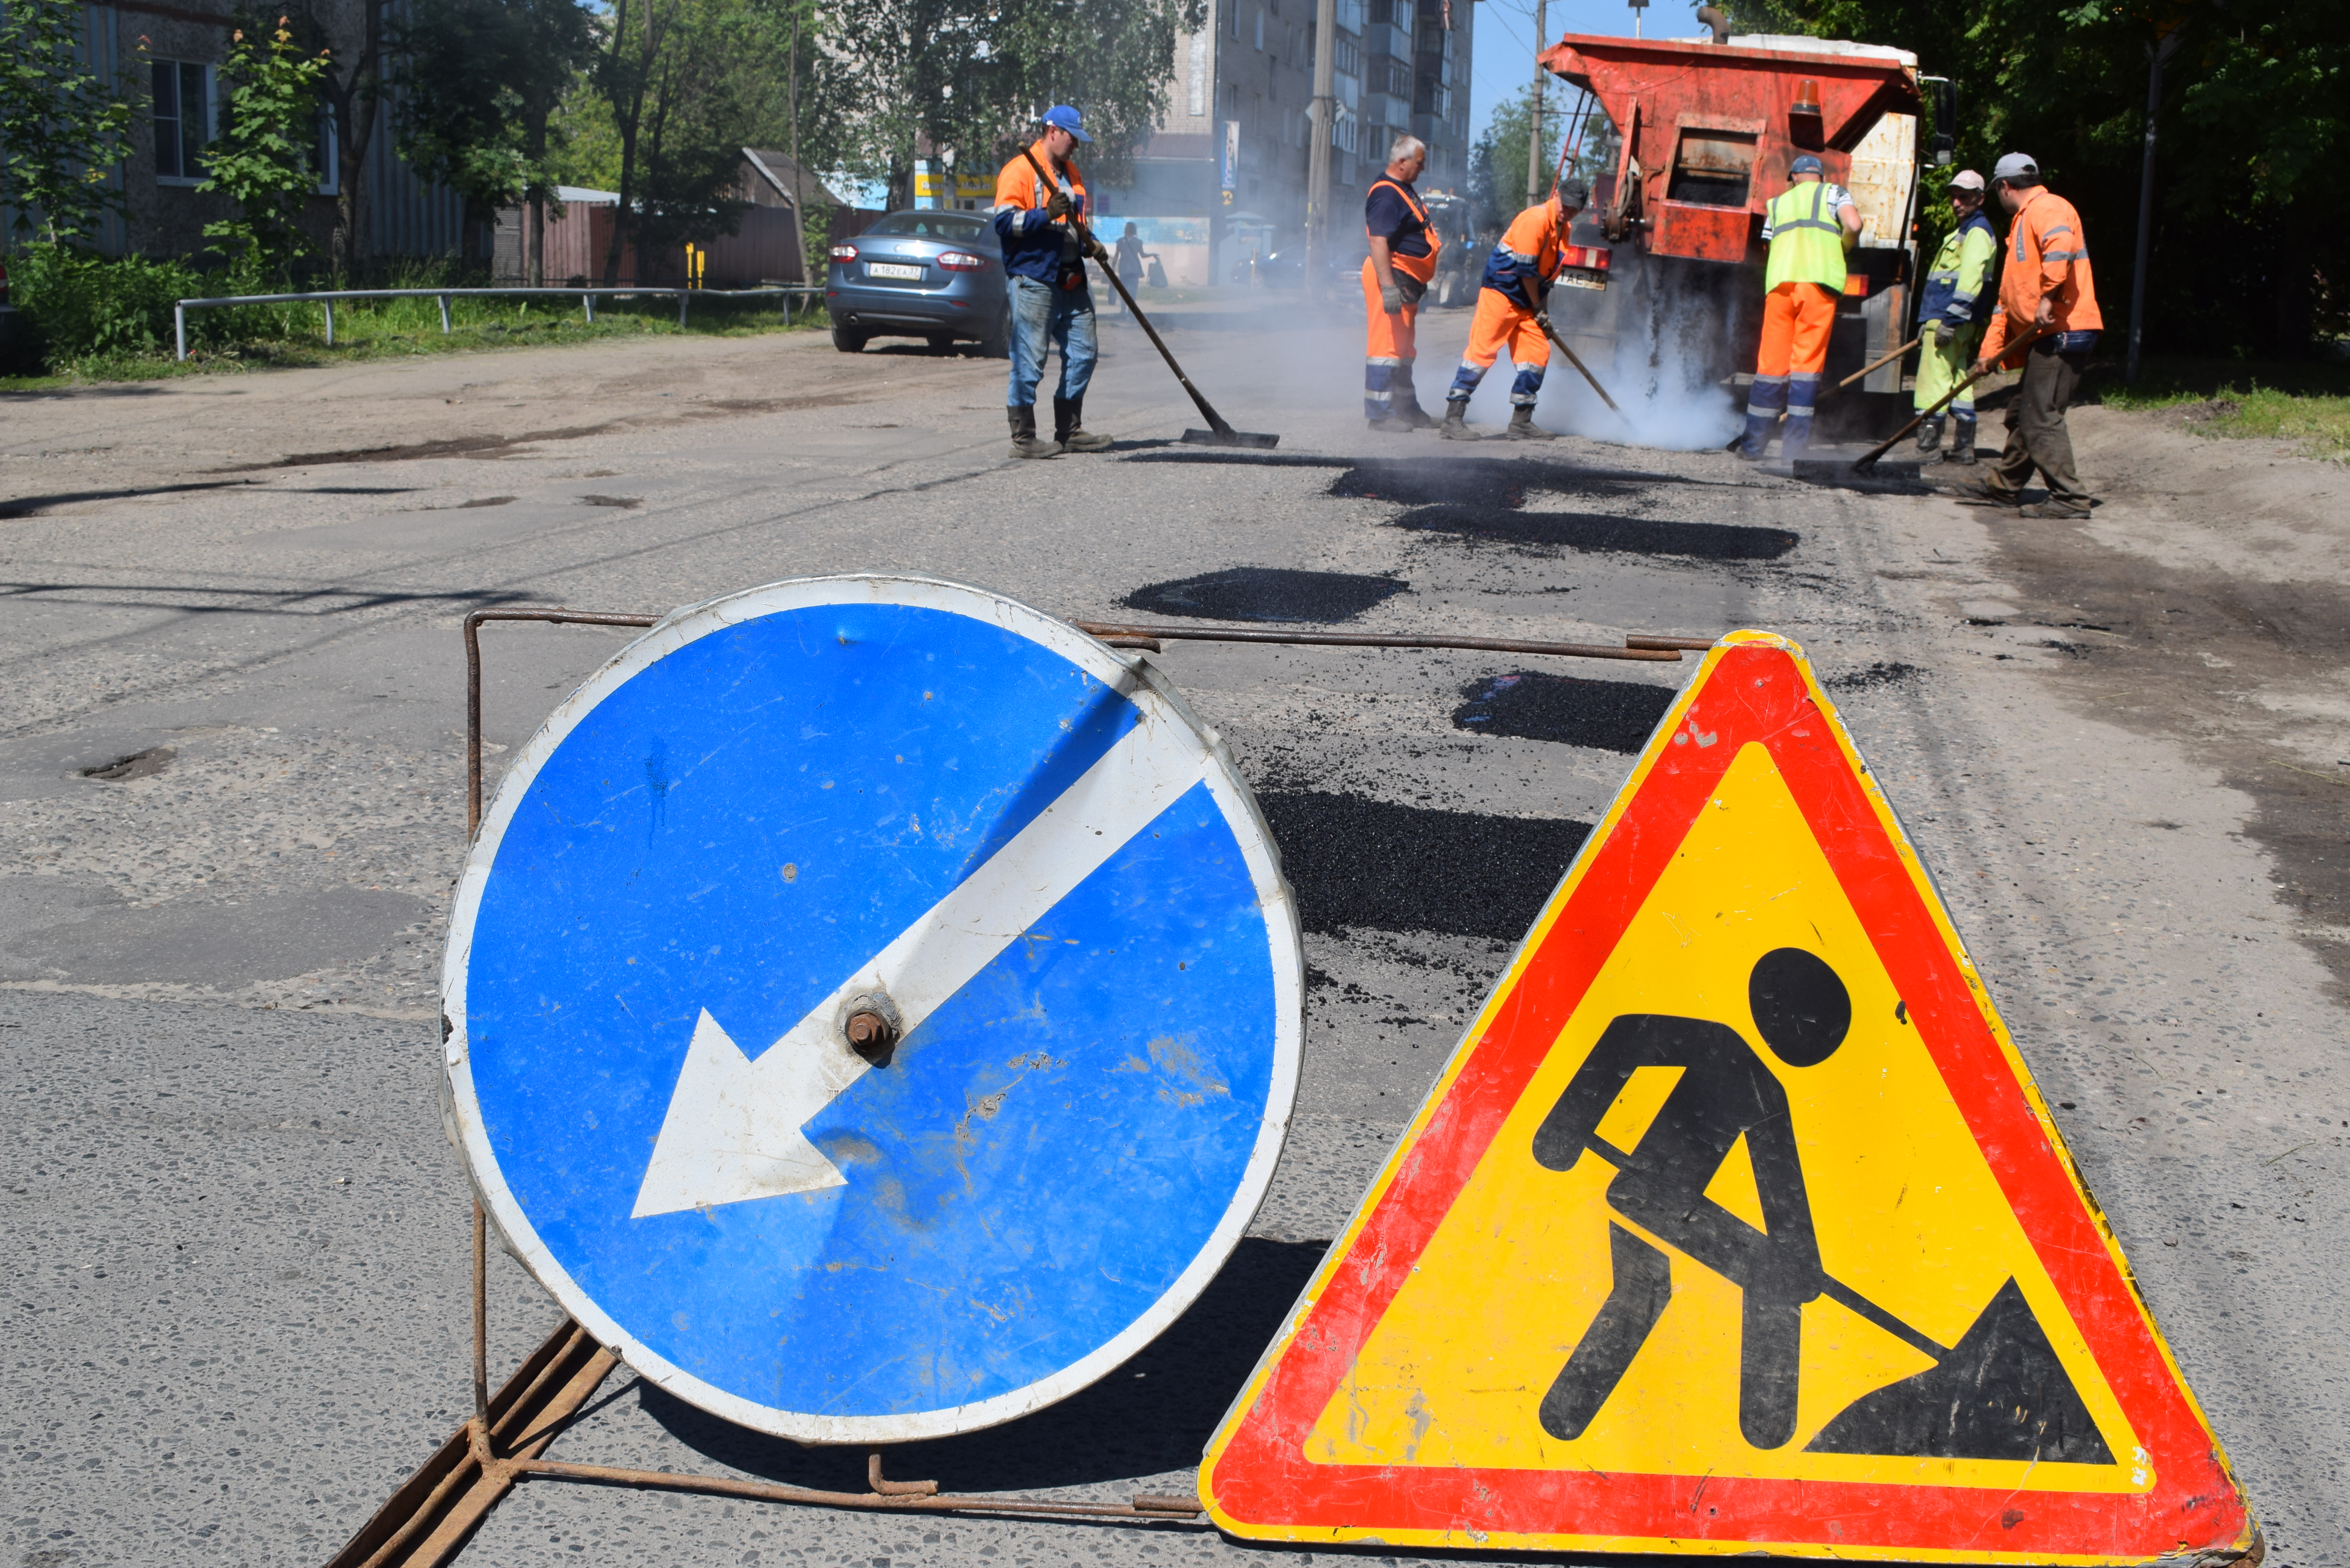 Ямочный ремонт дорог запланирован на улицах Красных Зорь, Лежневская и Зеленая.